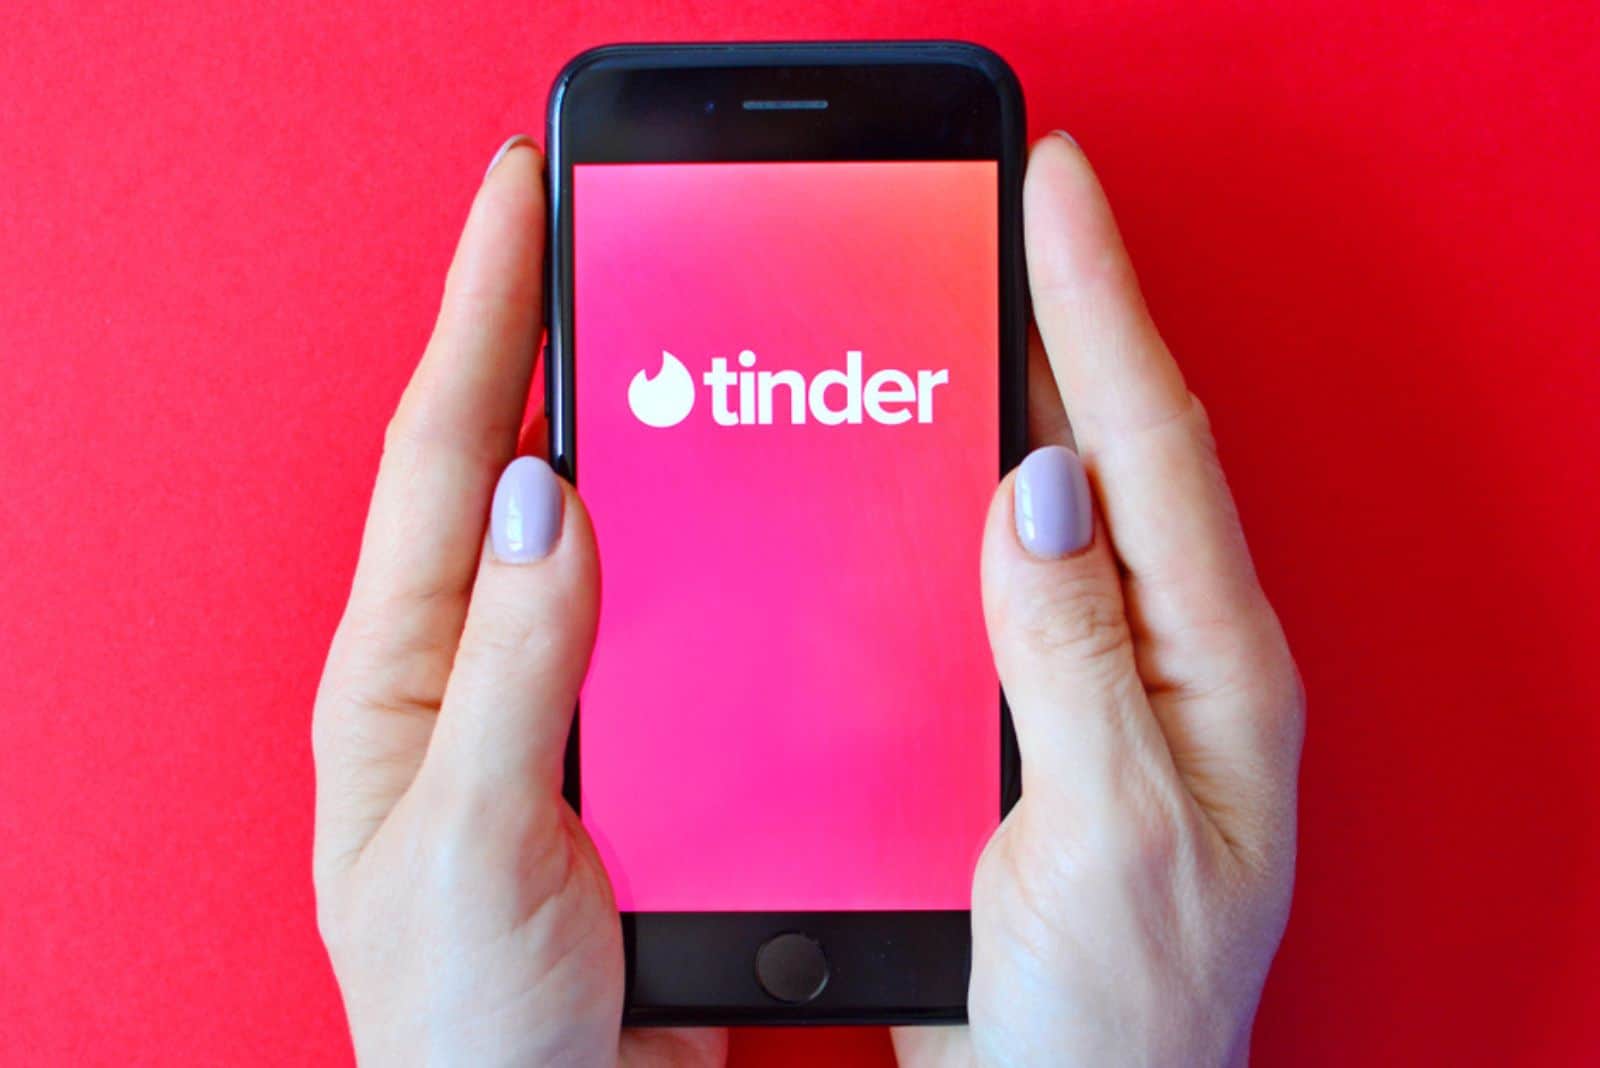 Éditorial illustratif du logo Tinder sur l'écran du smartphone dans les mains des femmes.